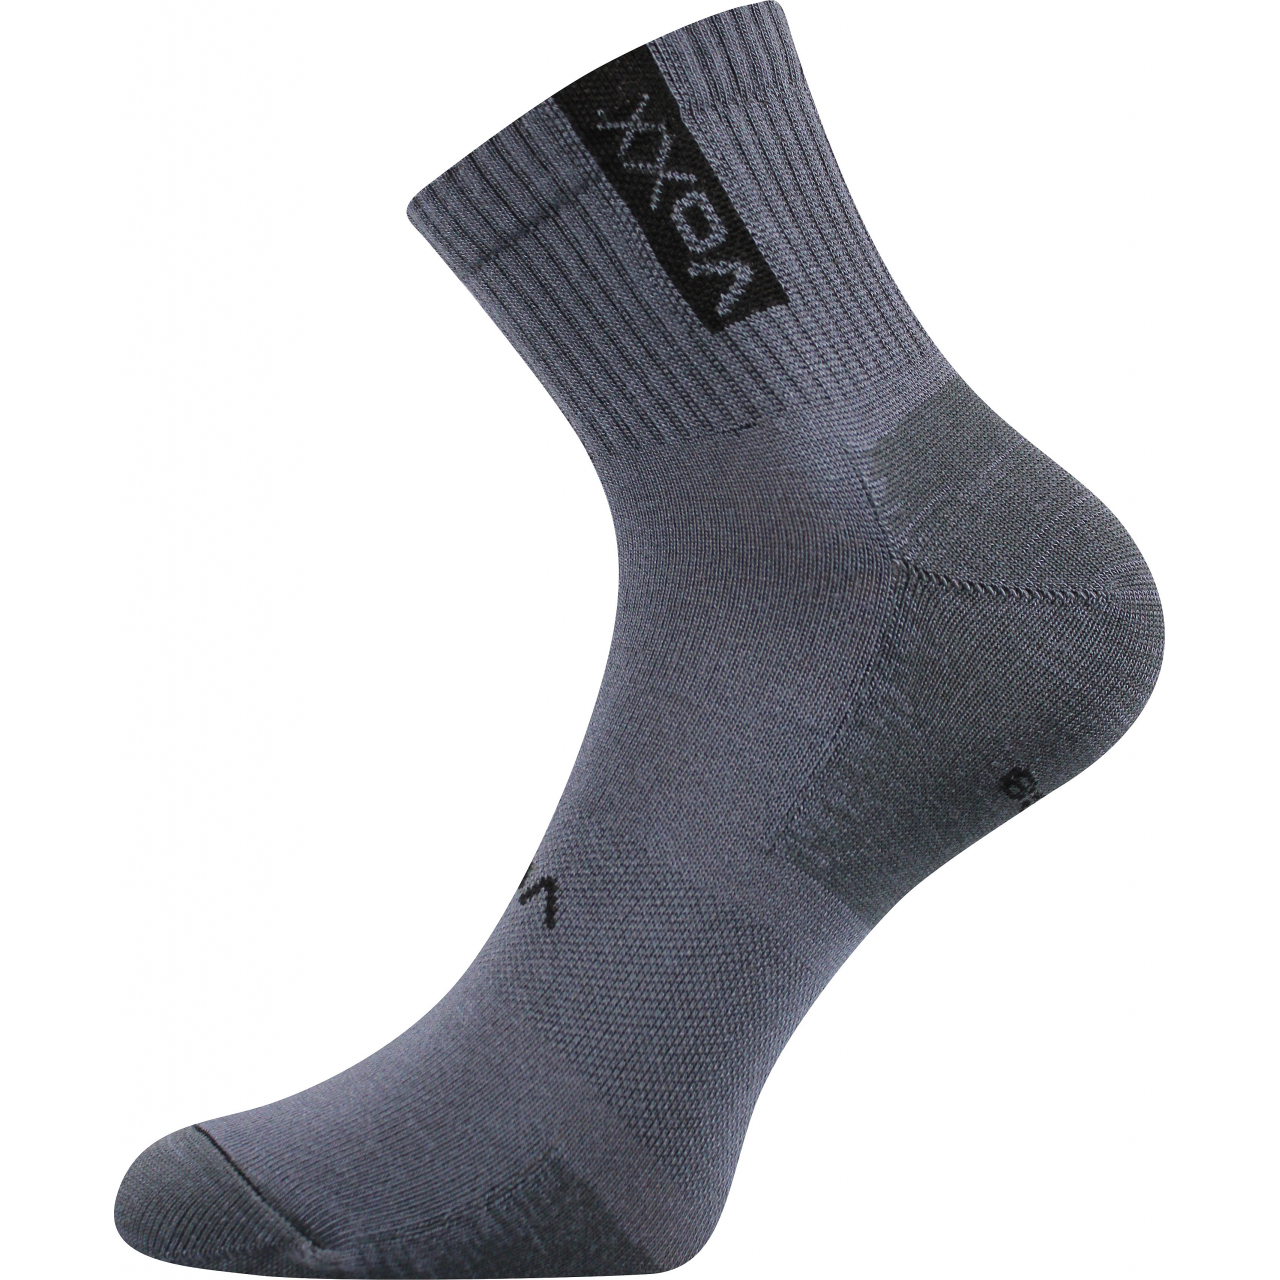 Ponožky sportovní unisex Voxx Brox - tmavě šedé, 39-42